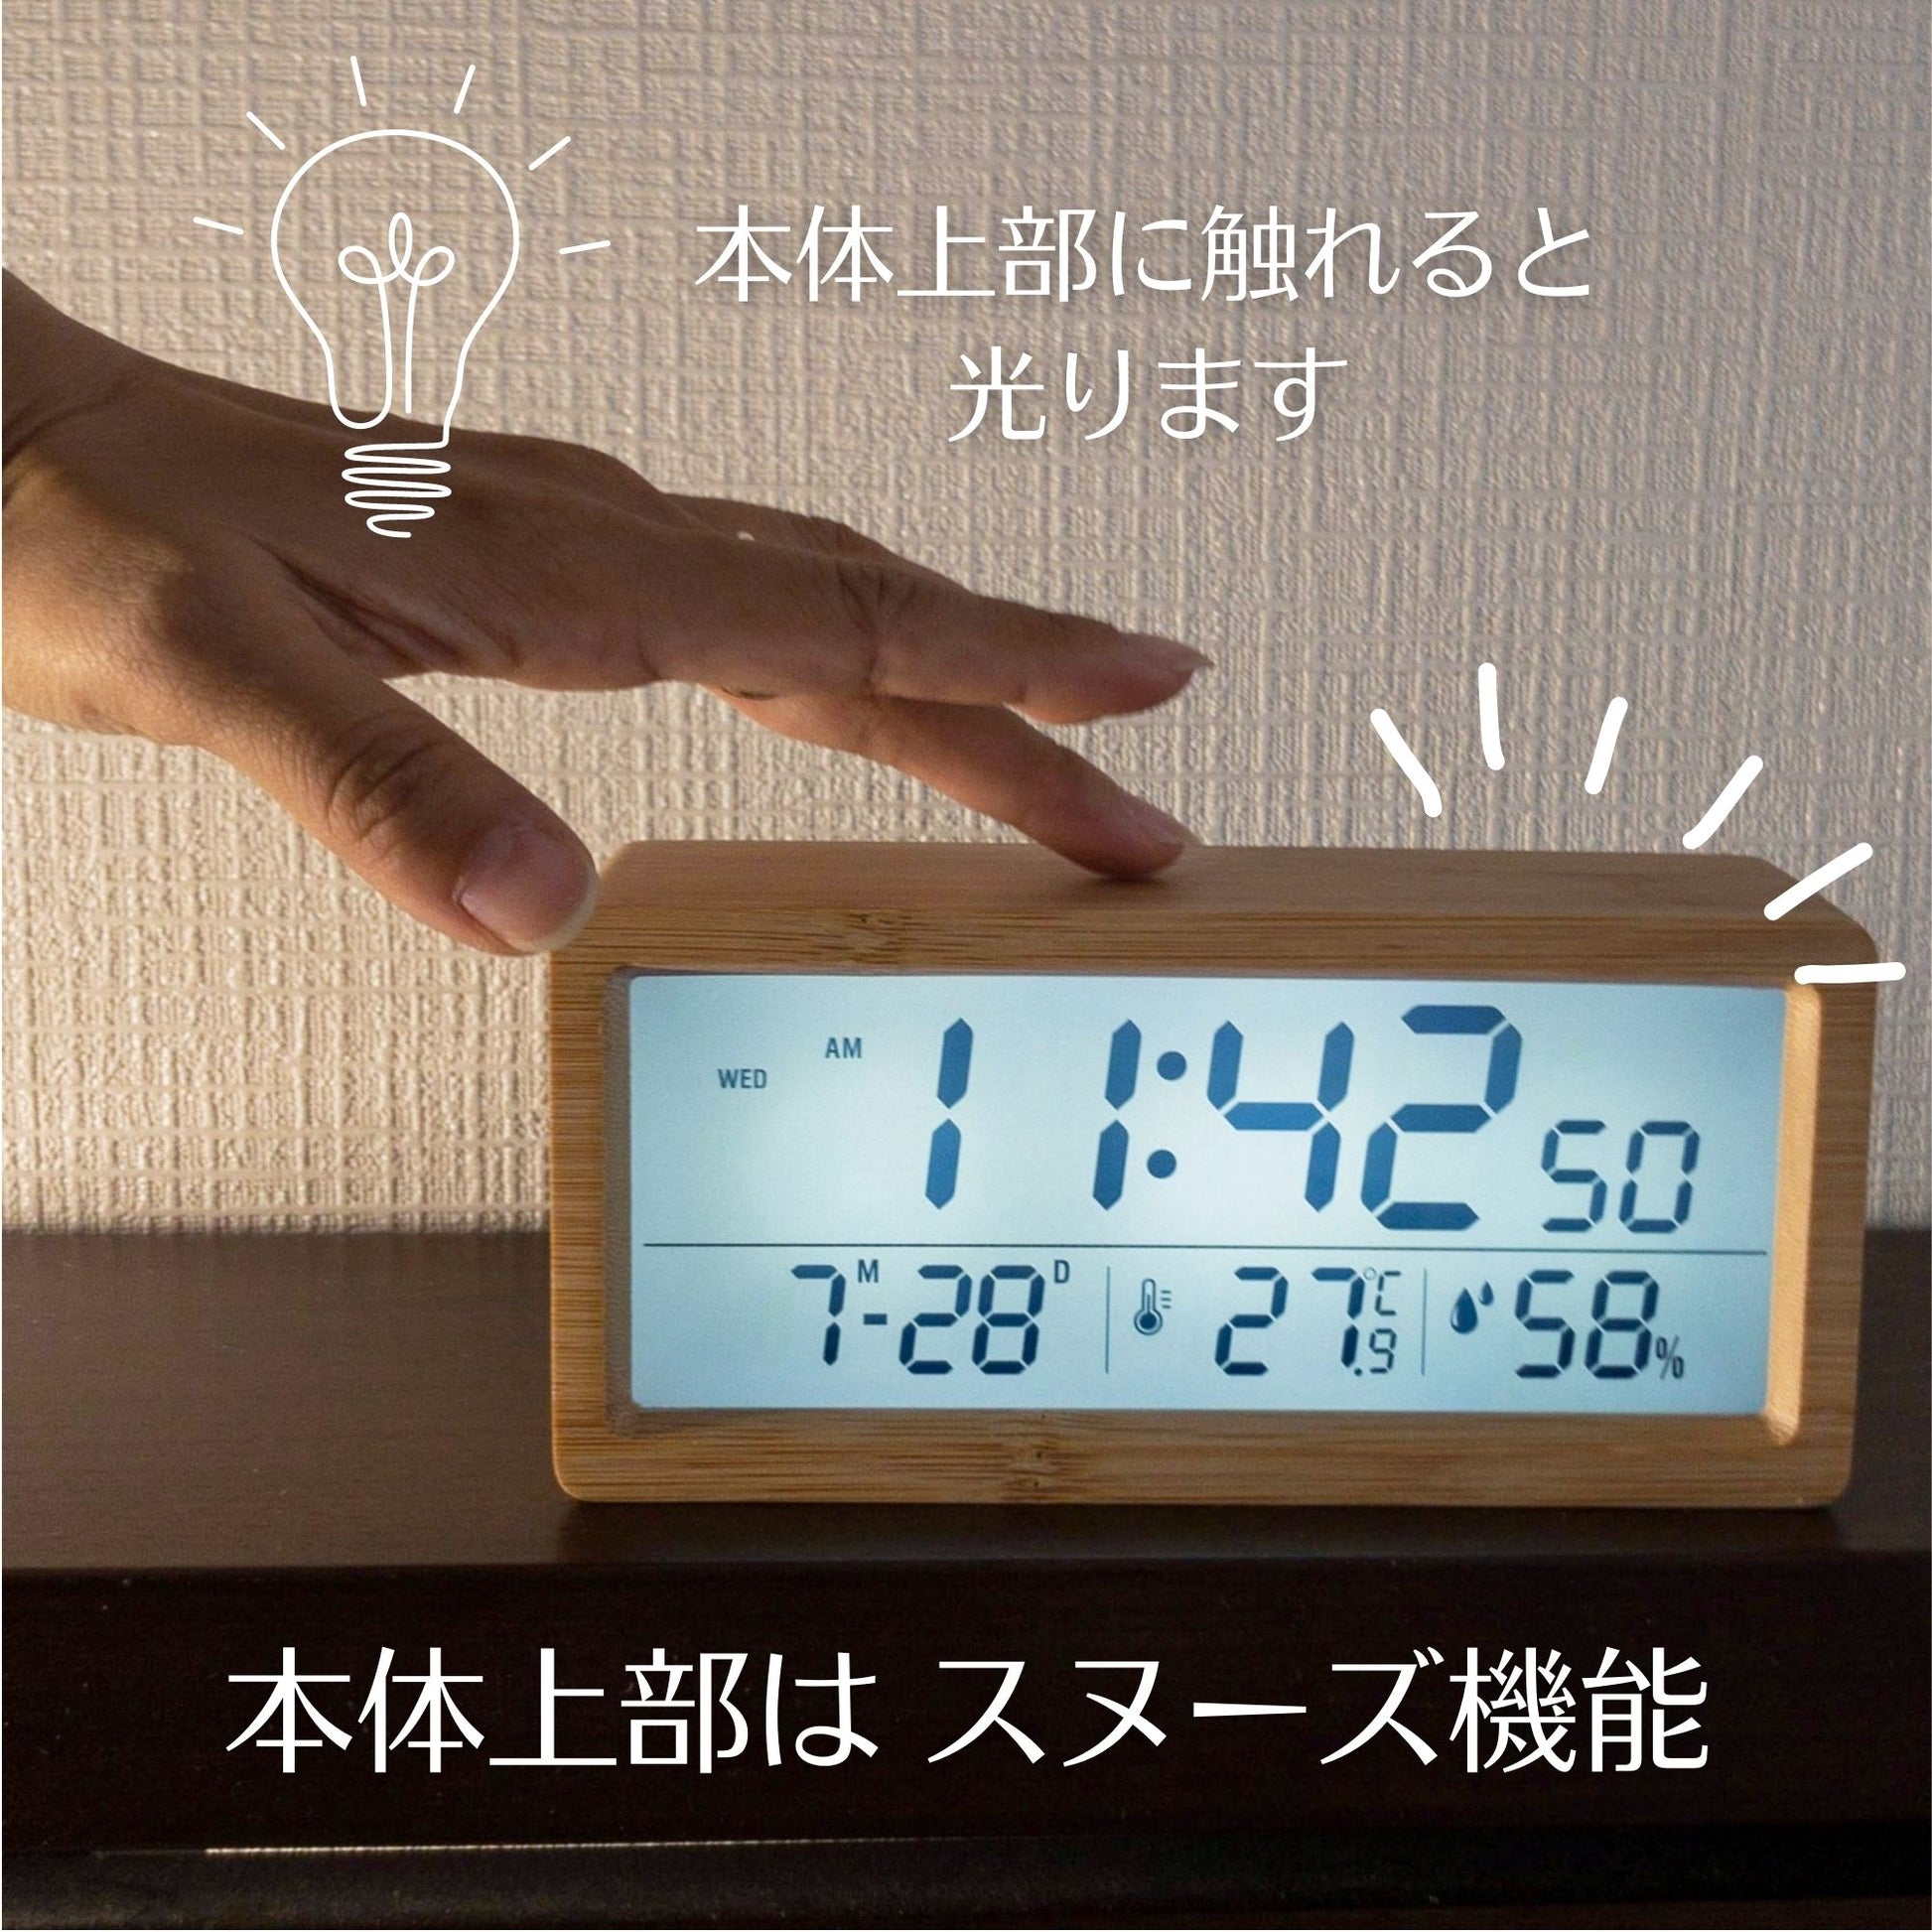 天然木材デジタル時計のスヌーズボタンの説明。本体上部がスヌーズ機能、触れると液晶が光る。